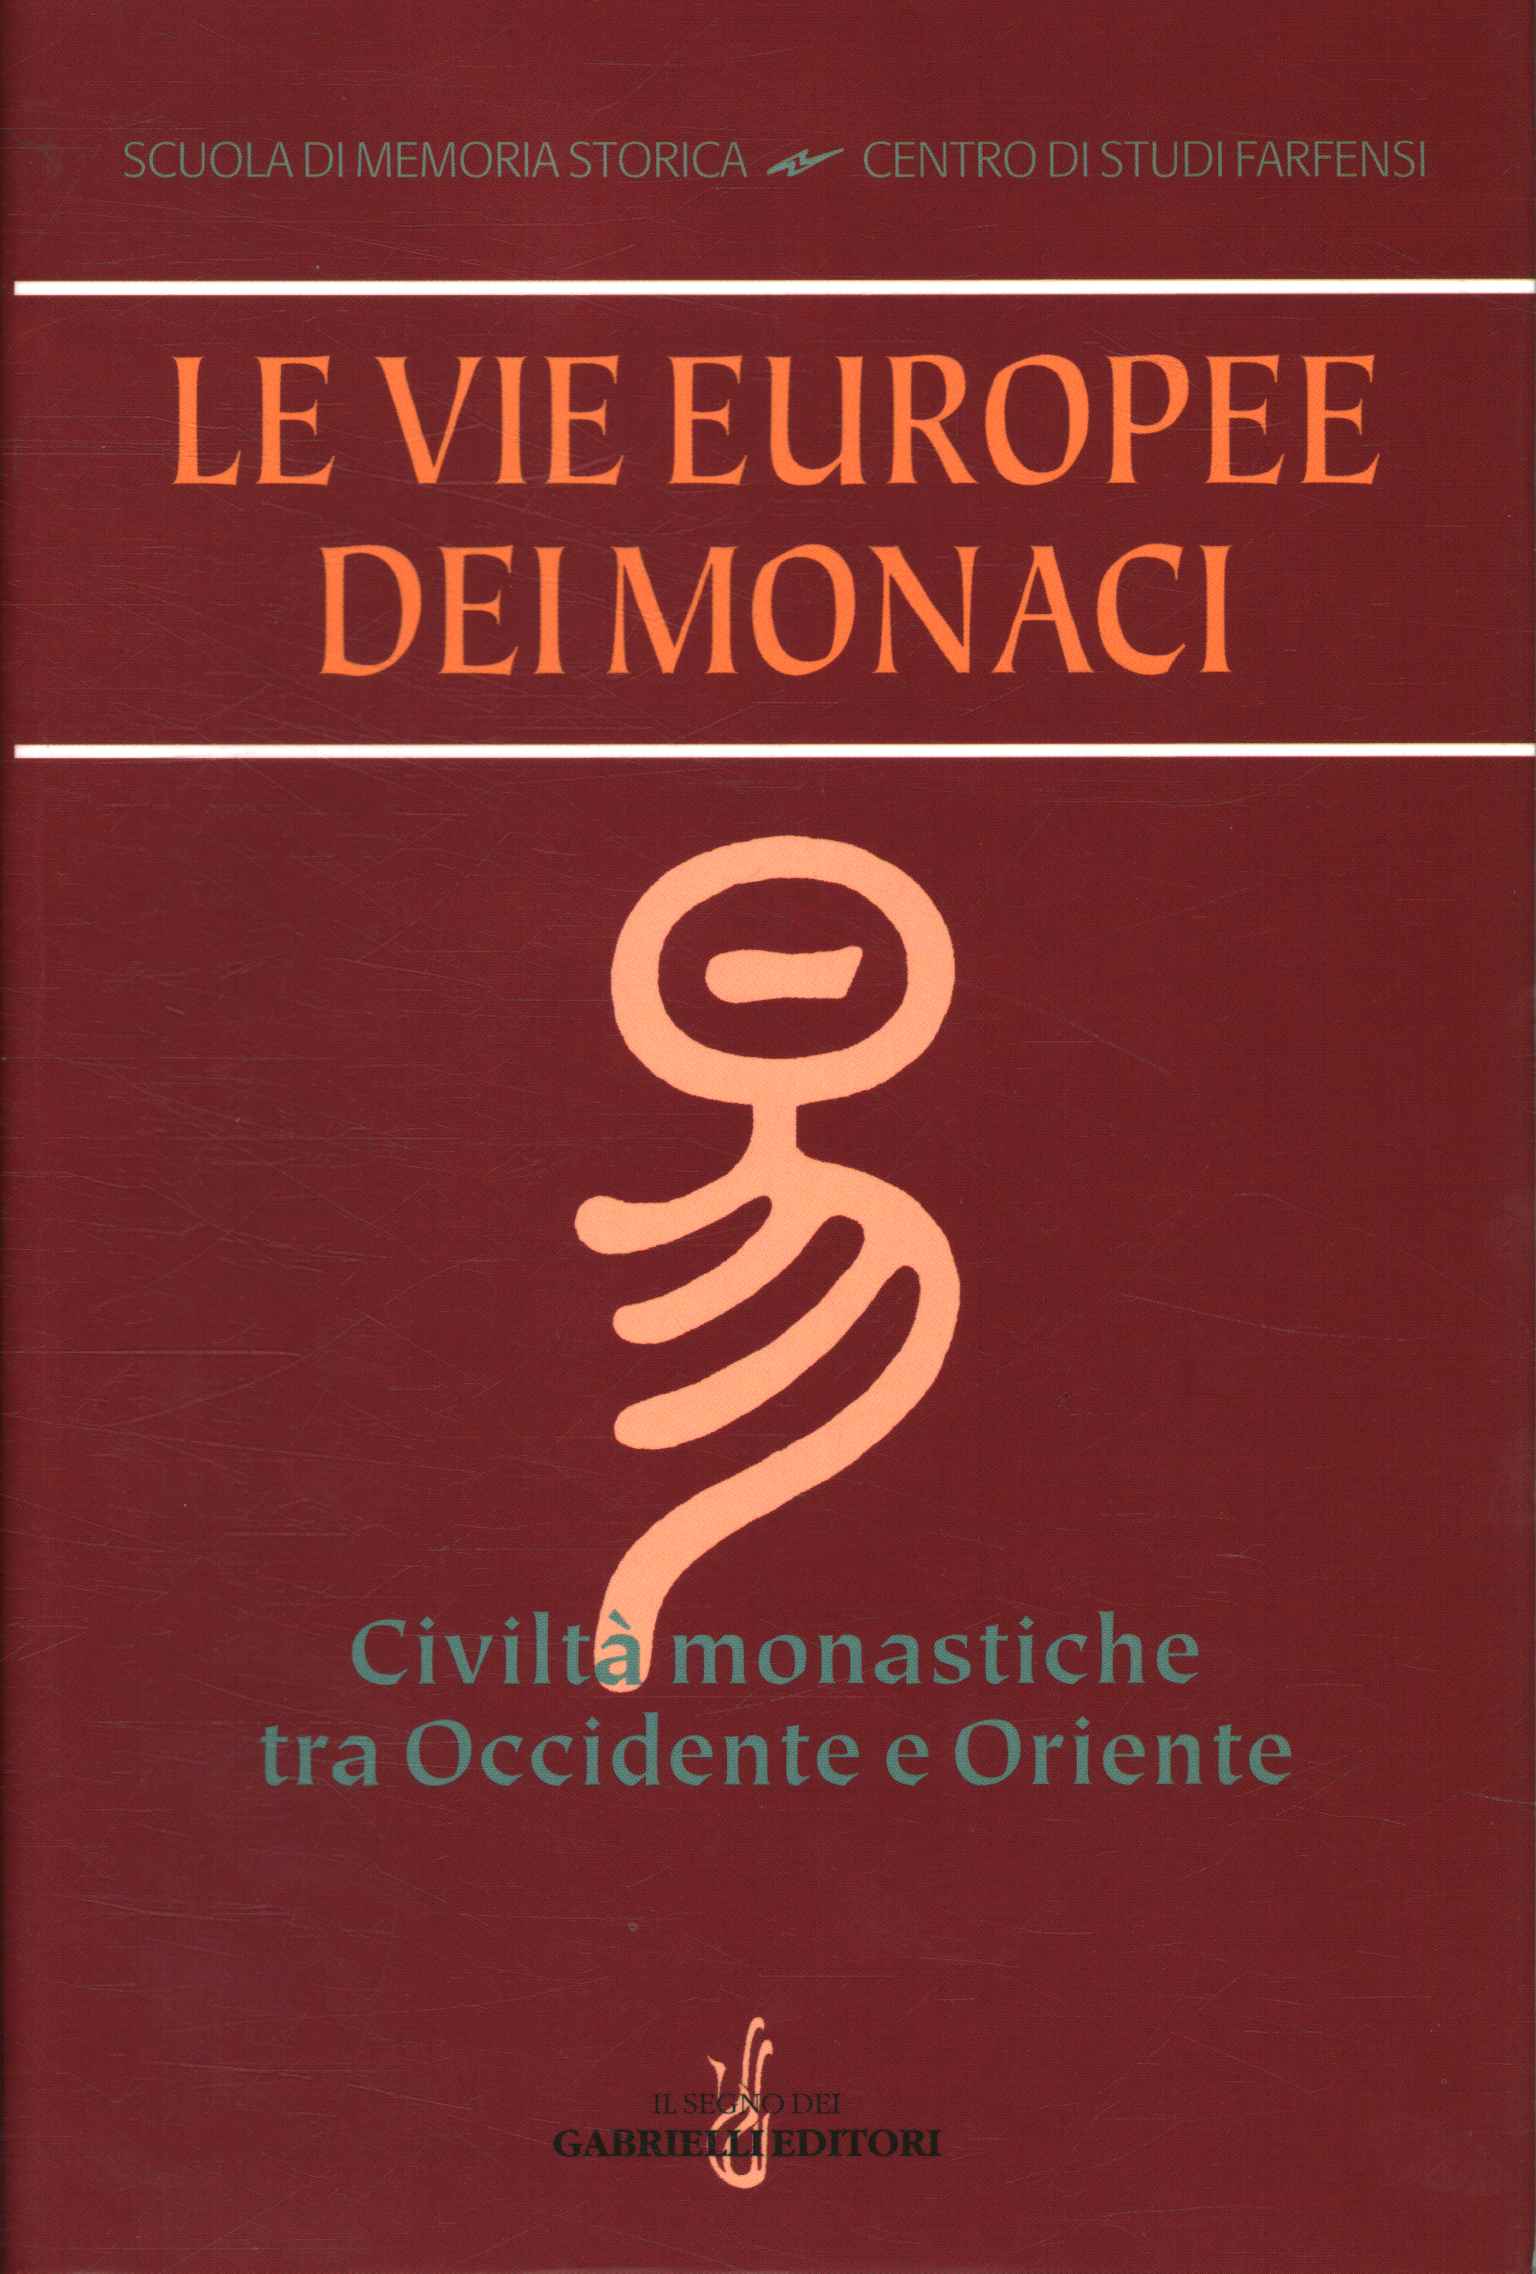 Les voies européennes des moines